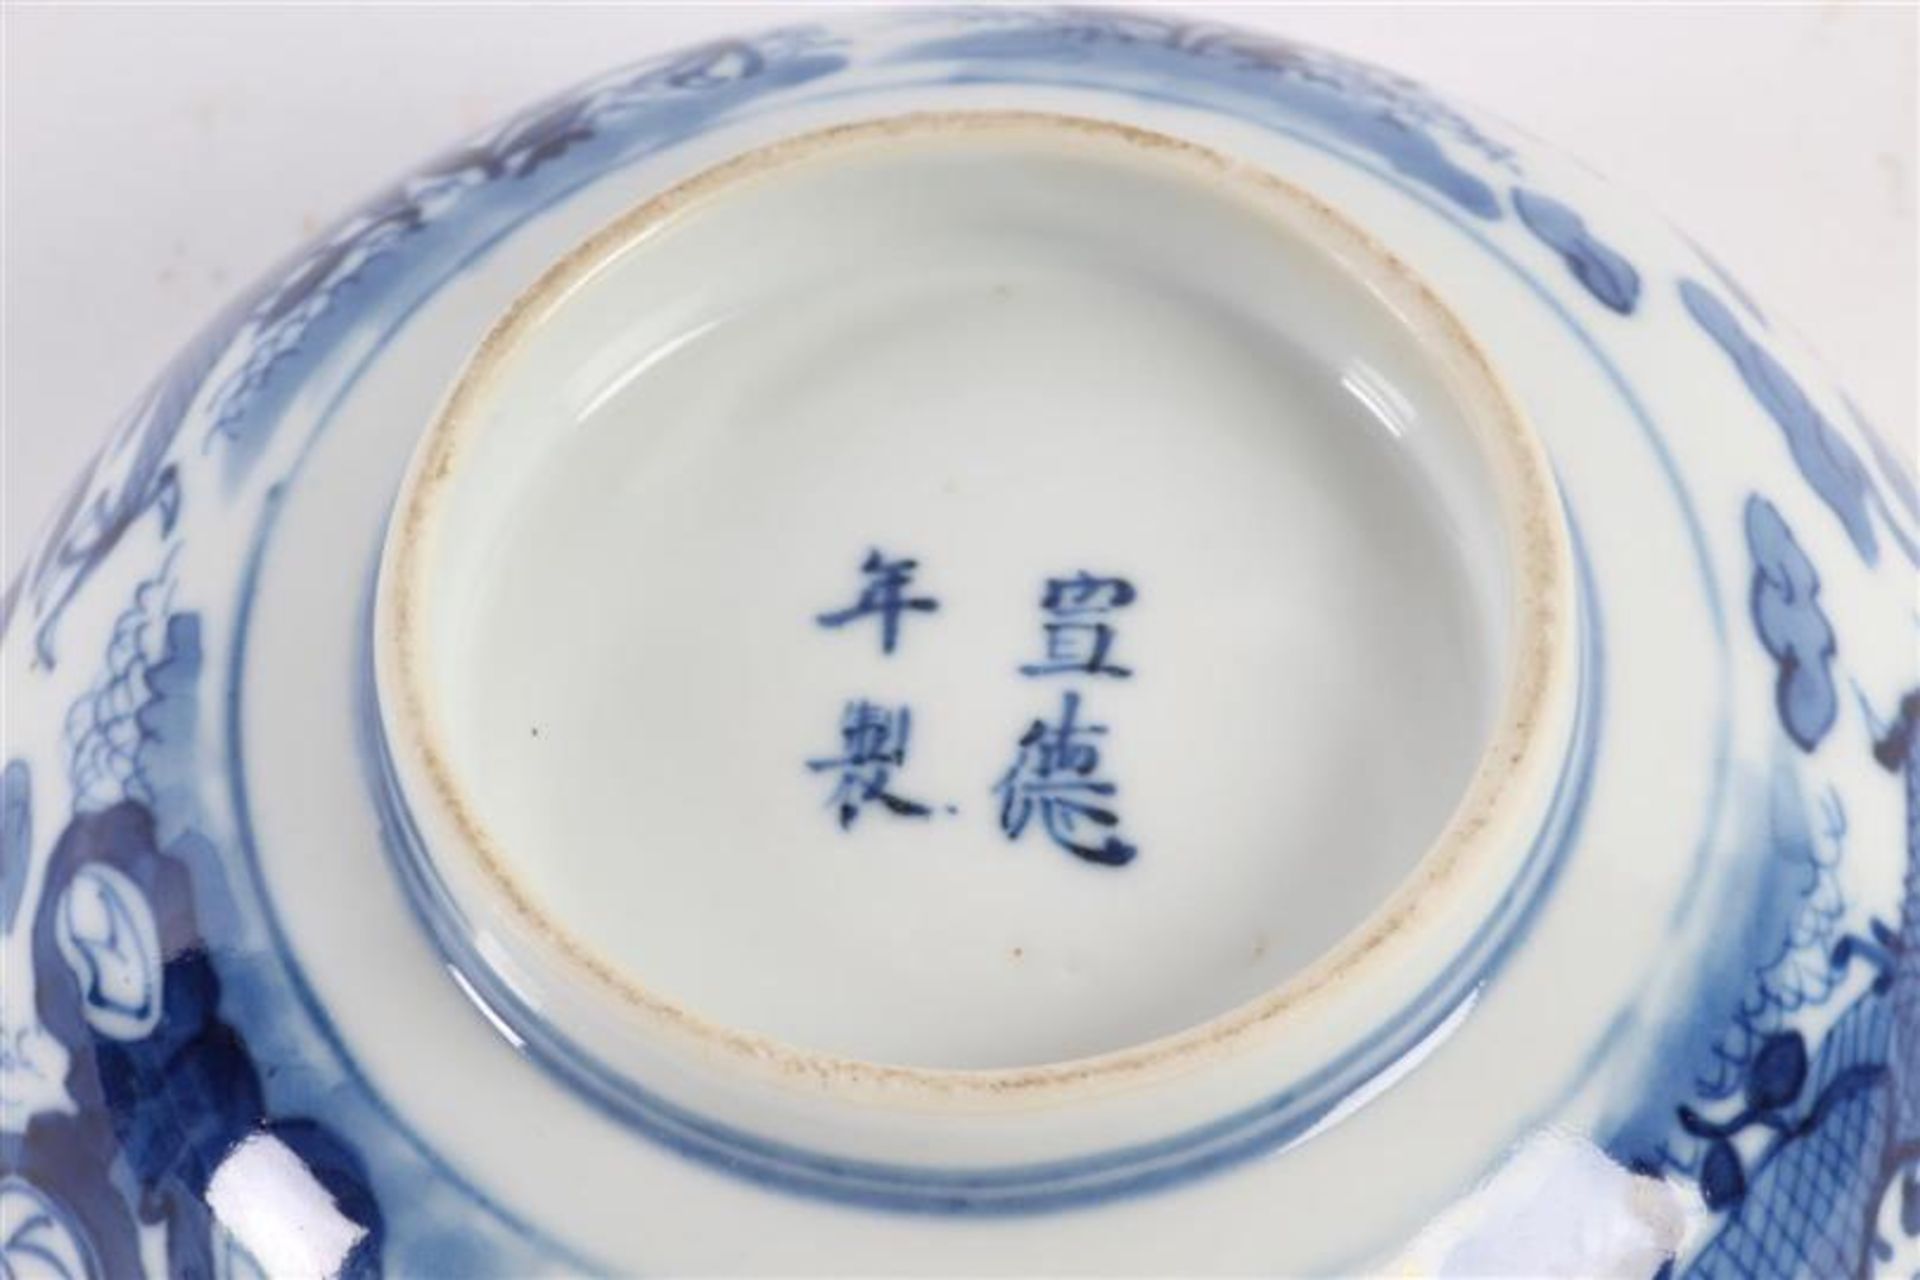 Chinees porseleinen kom met decor van regendraken, 19e eeuw. D: 14.5 cm. - Bild 3 aus 3